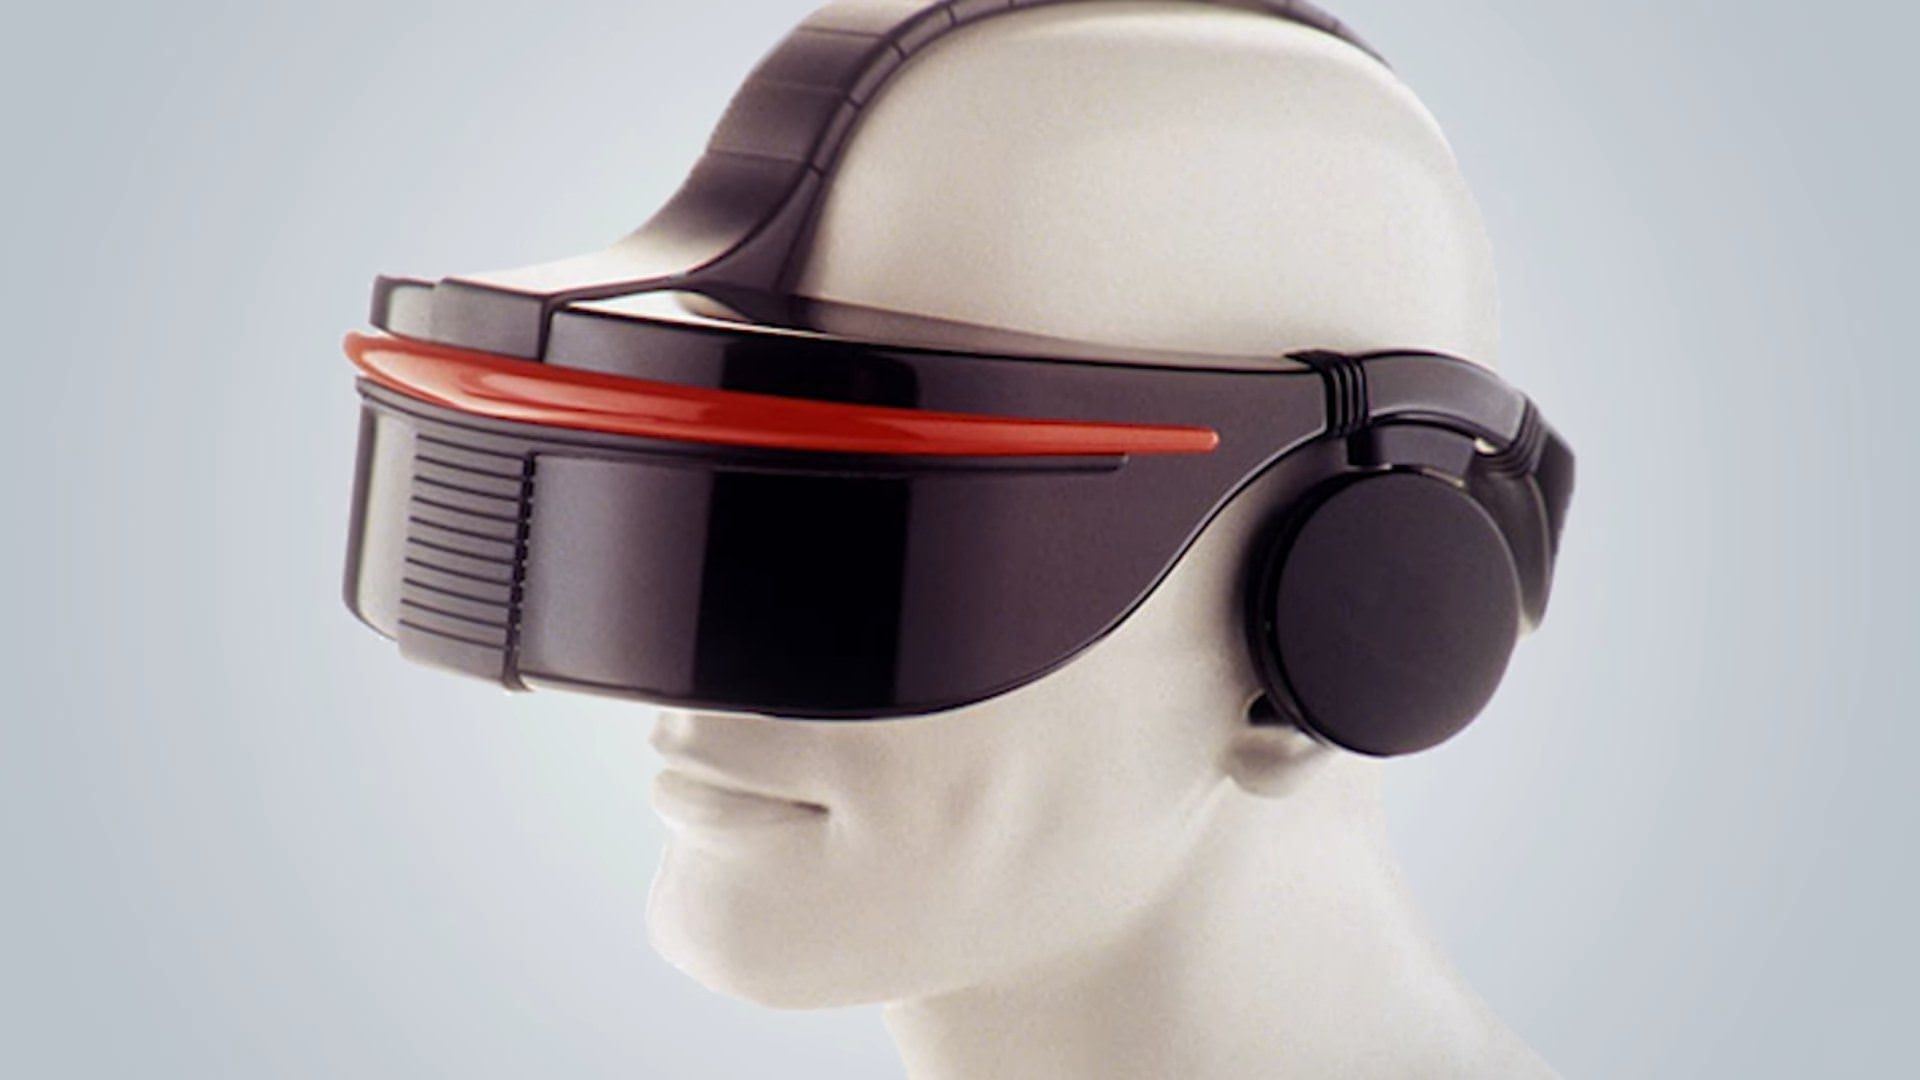 هدست واقعیت مجازی سگا به نام Sega VR